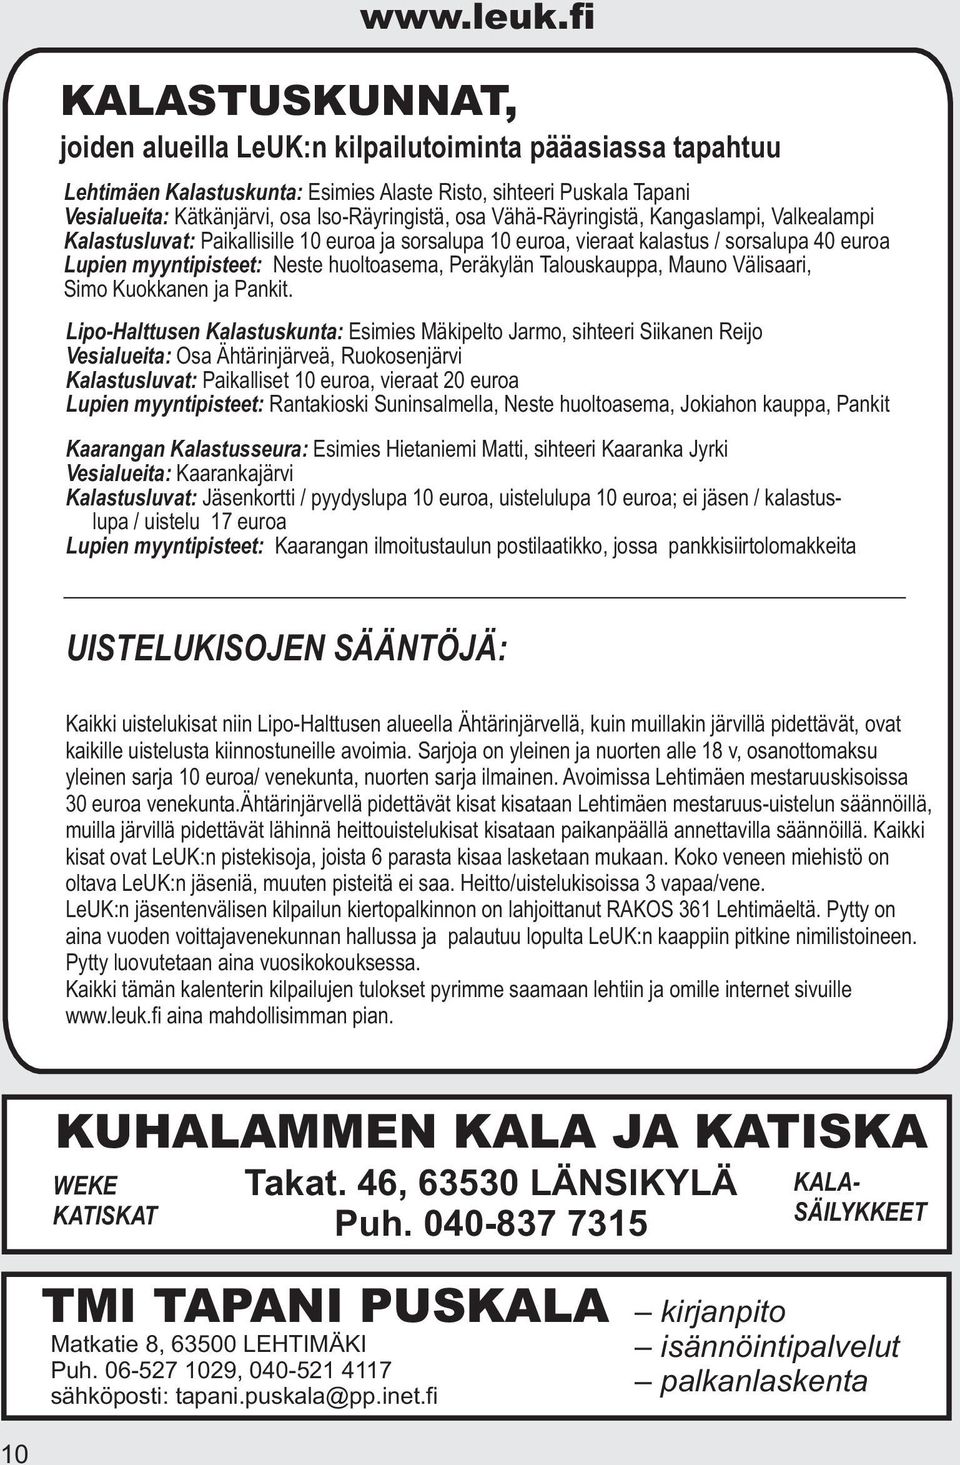 Talouskauppa, Mauno Välisaari, Simo Kuokkanen ja Pankit.